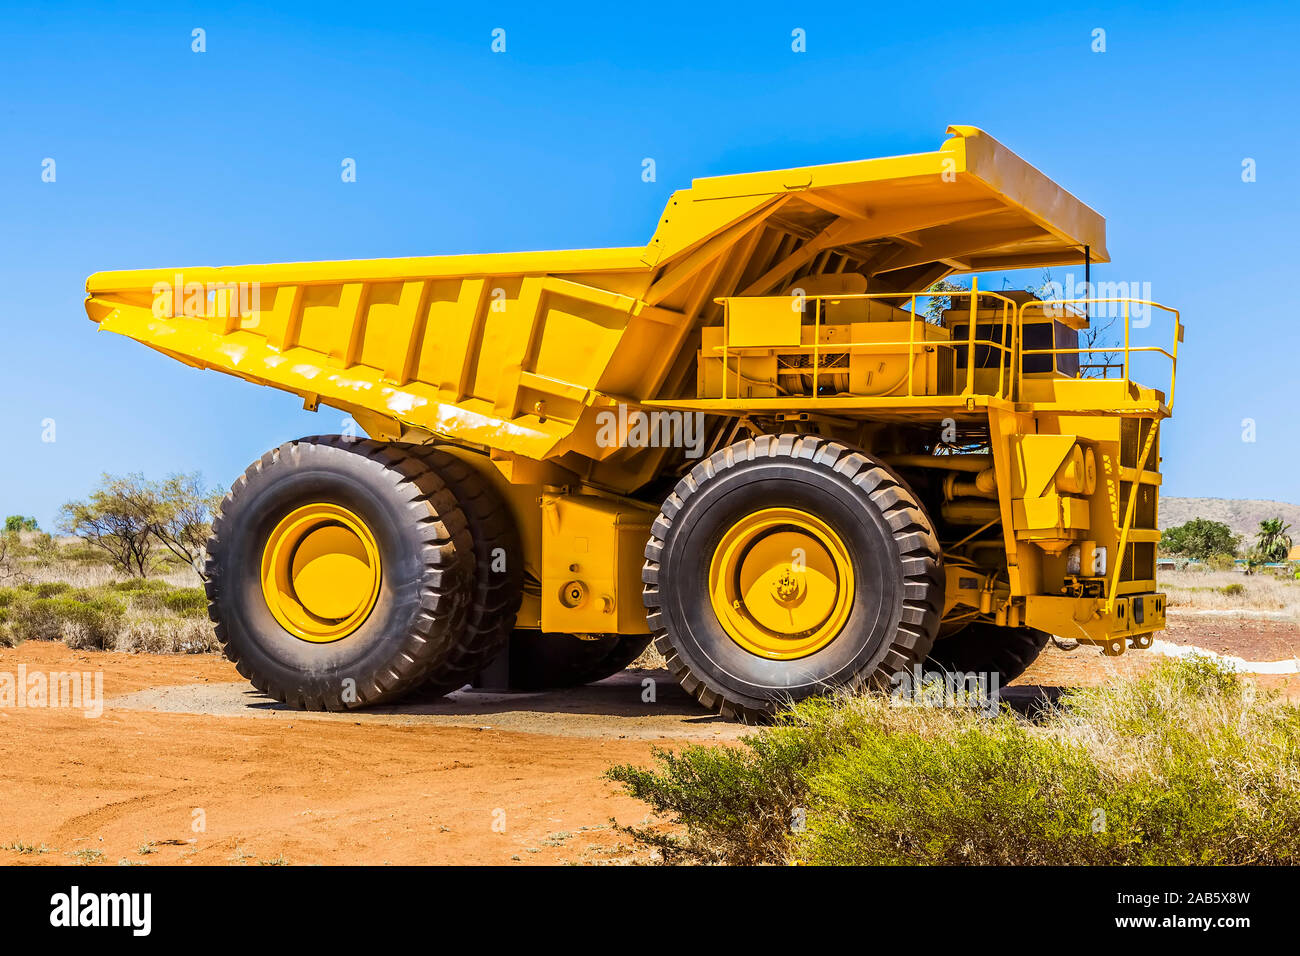 Ein grosser gelber Transporter im Outback Australiens Stock Photo